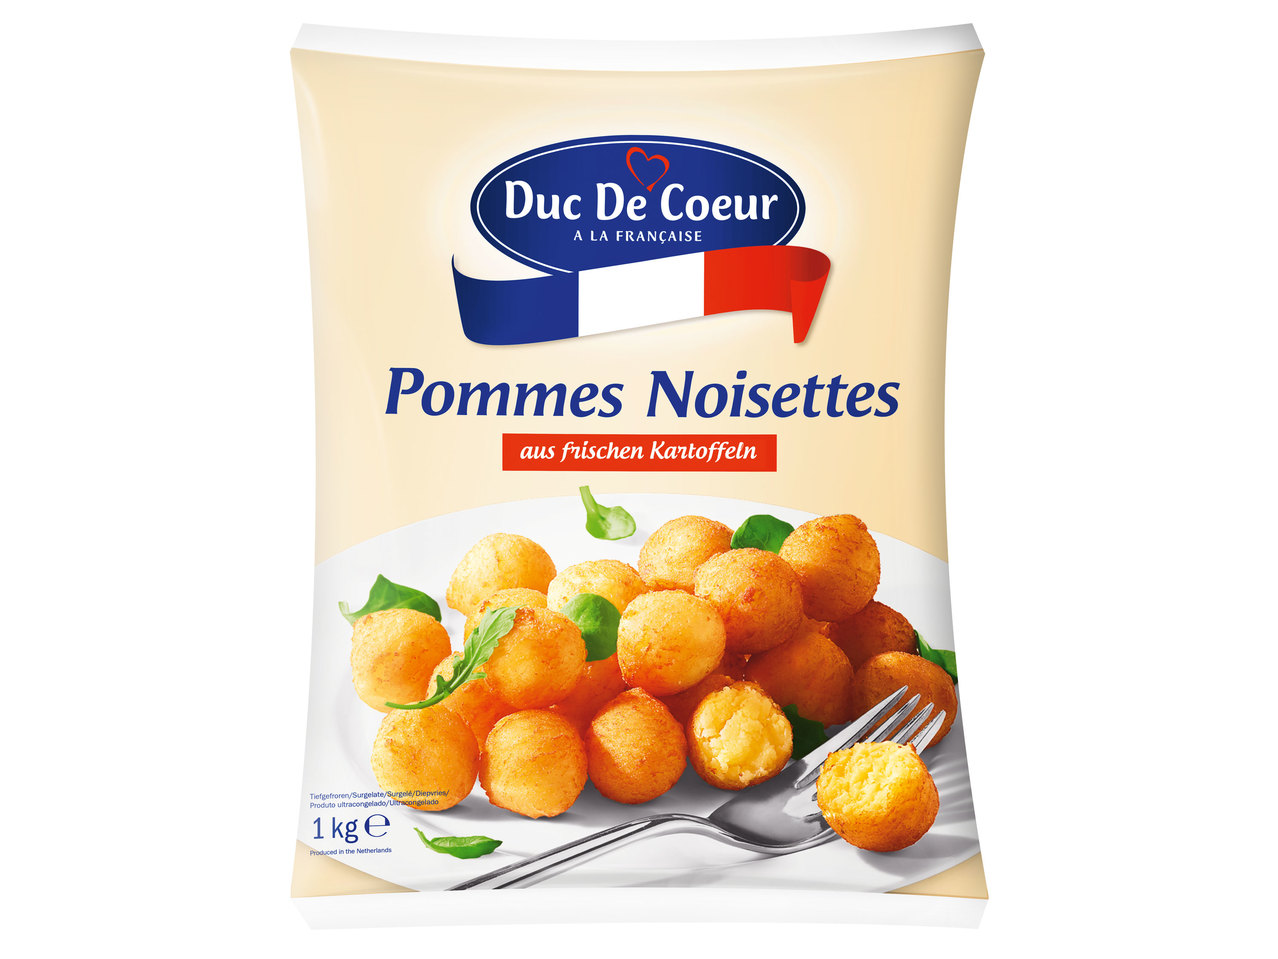 DUC DE COEUR Pommes Noisettes